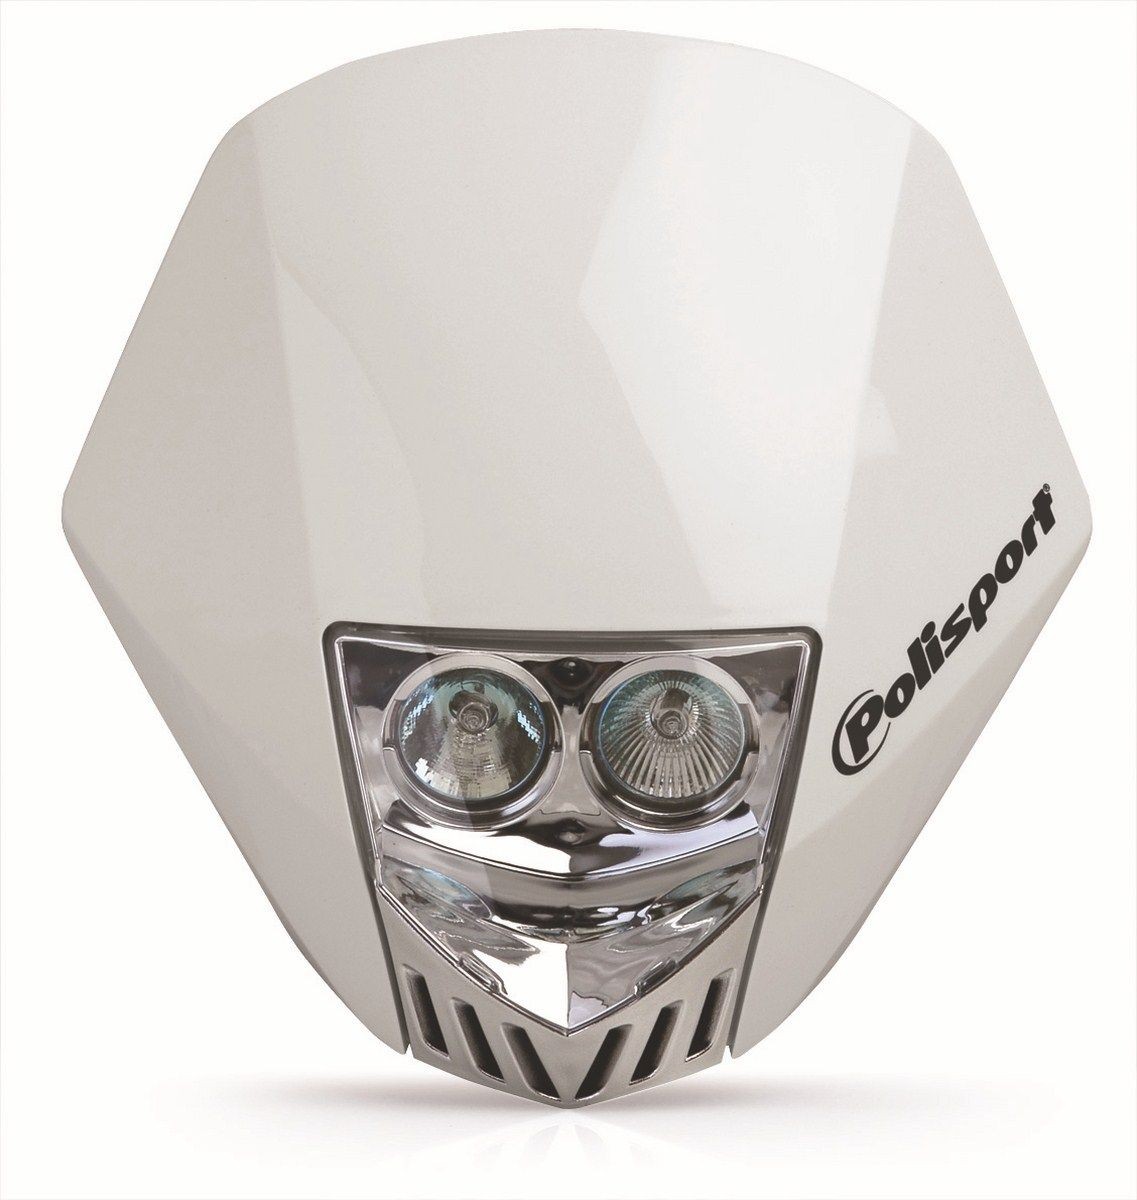 Careta Polisport HMX LED blanco 8657100001 - Motos Cano Sport